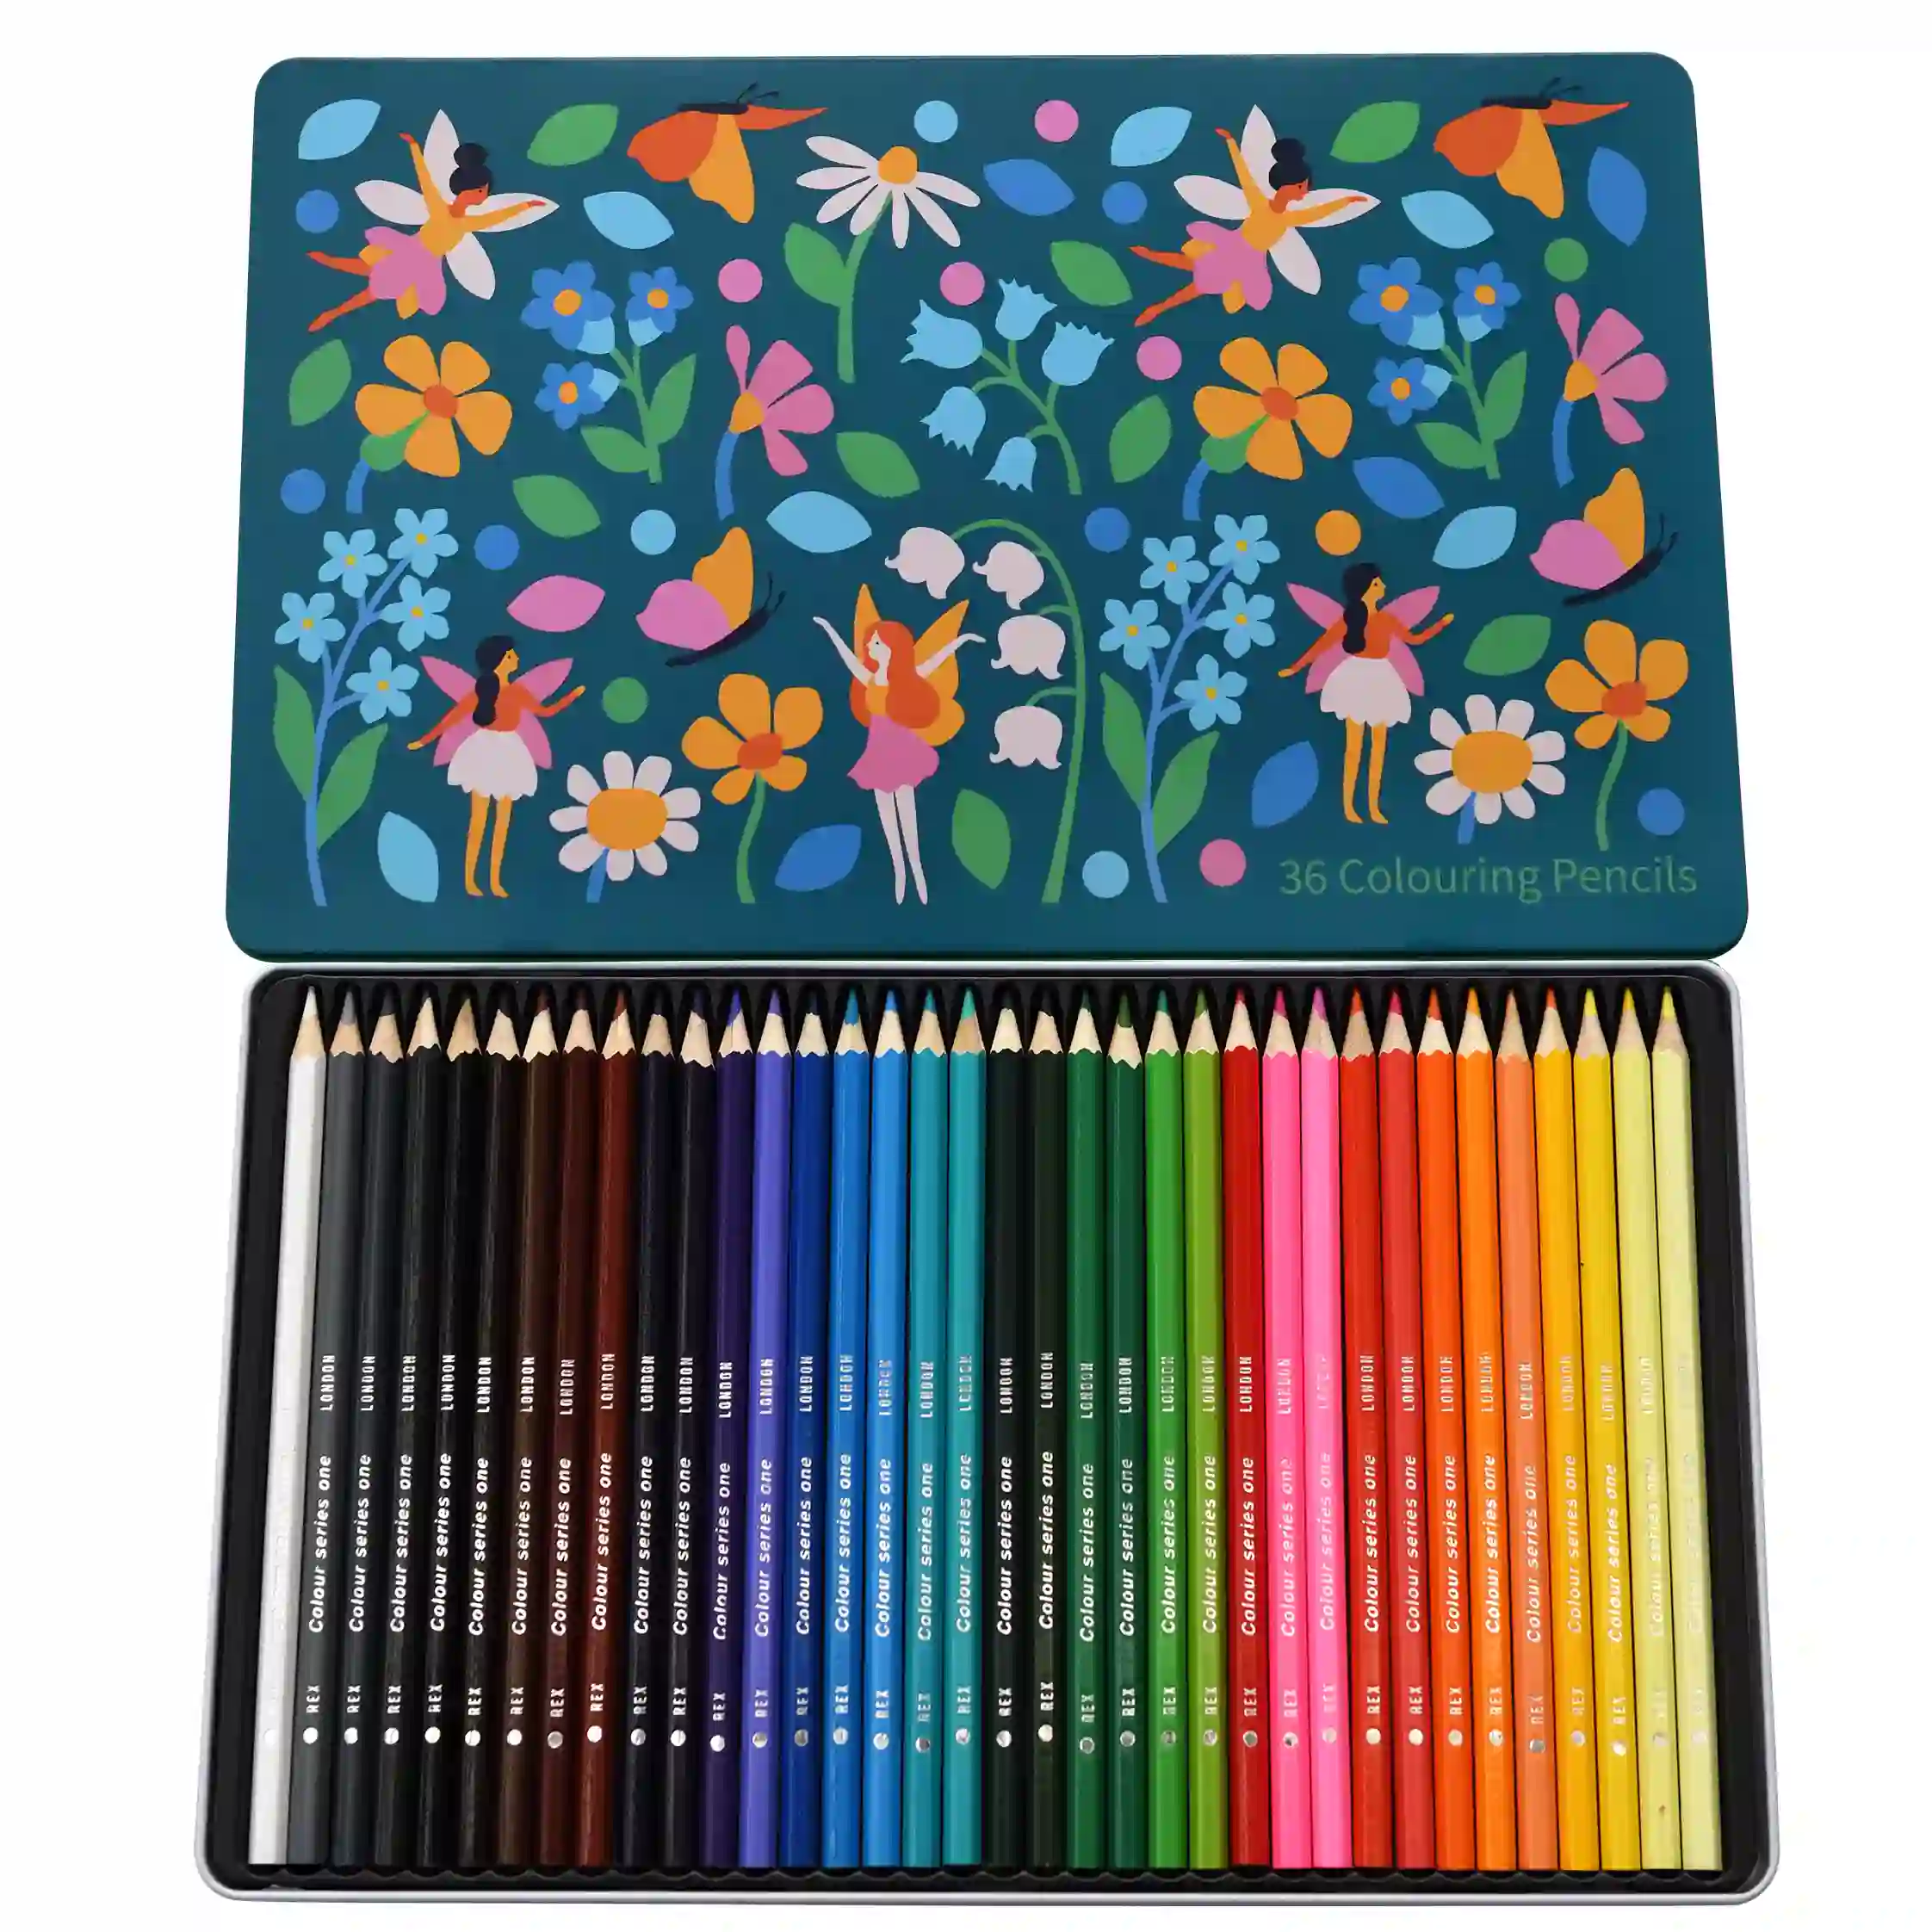 36 colouring pencils in a tin - fairies in the garden